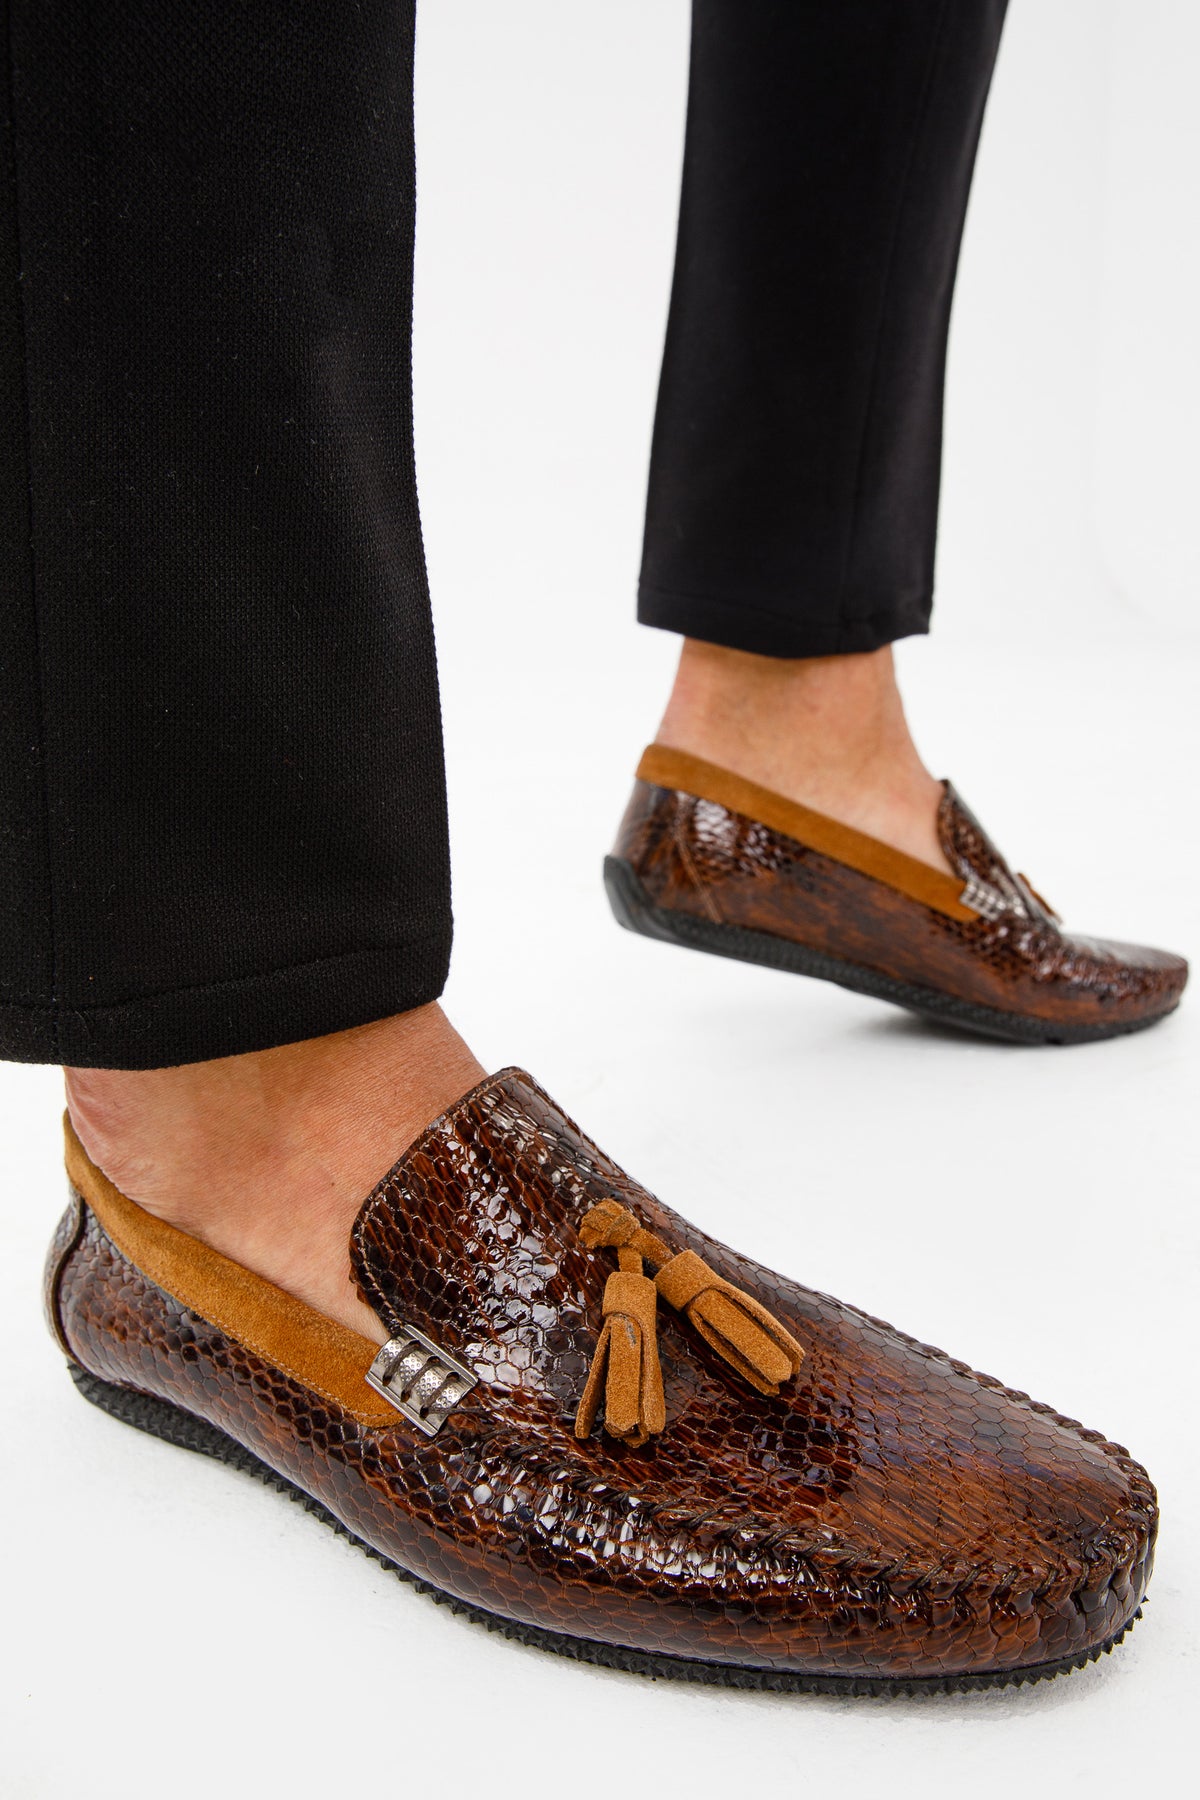 CORDOVA (8498) – Vinci Leather Shoes